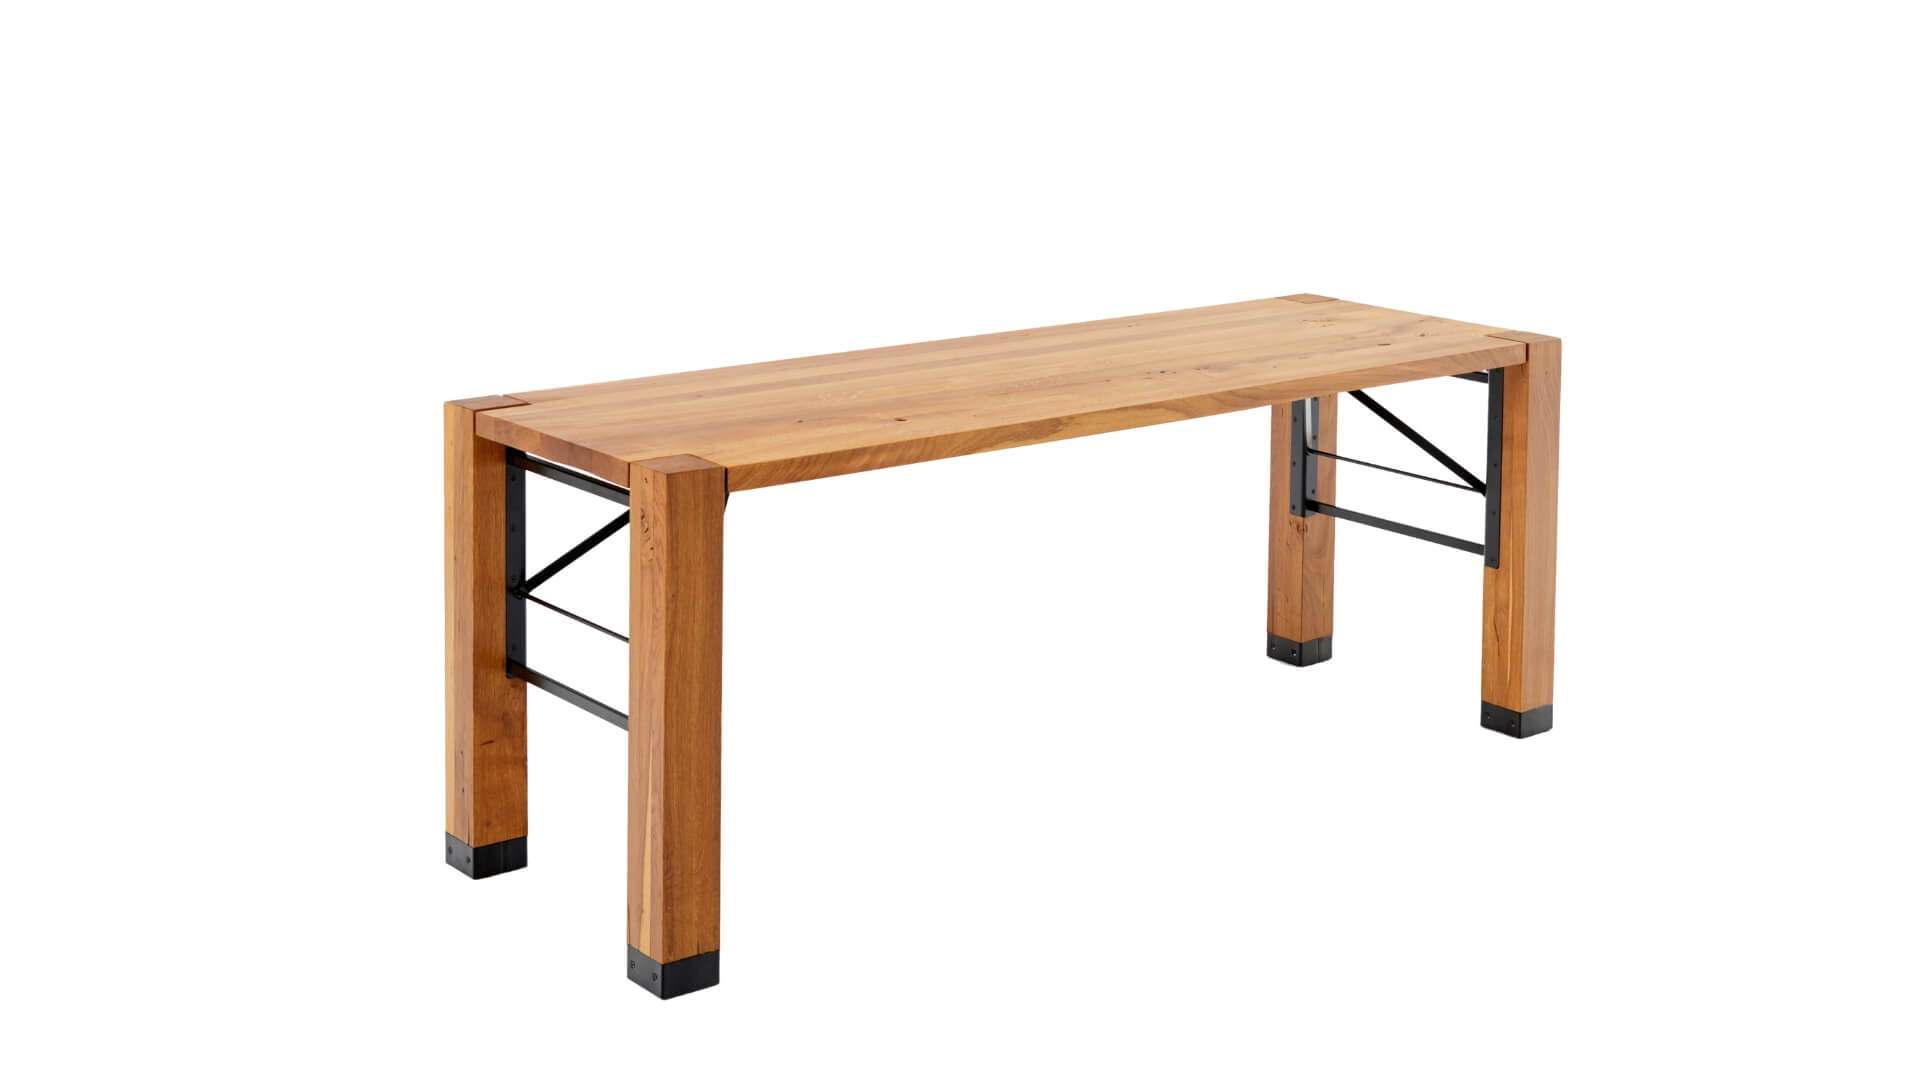 Table length